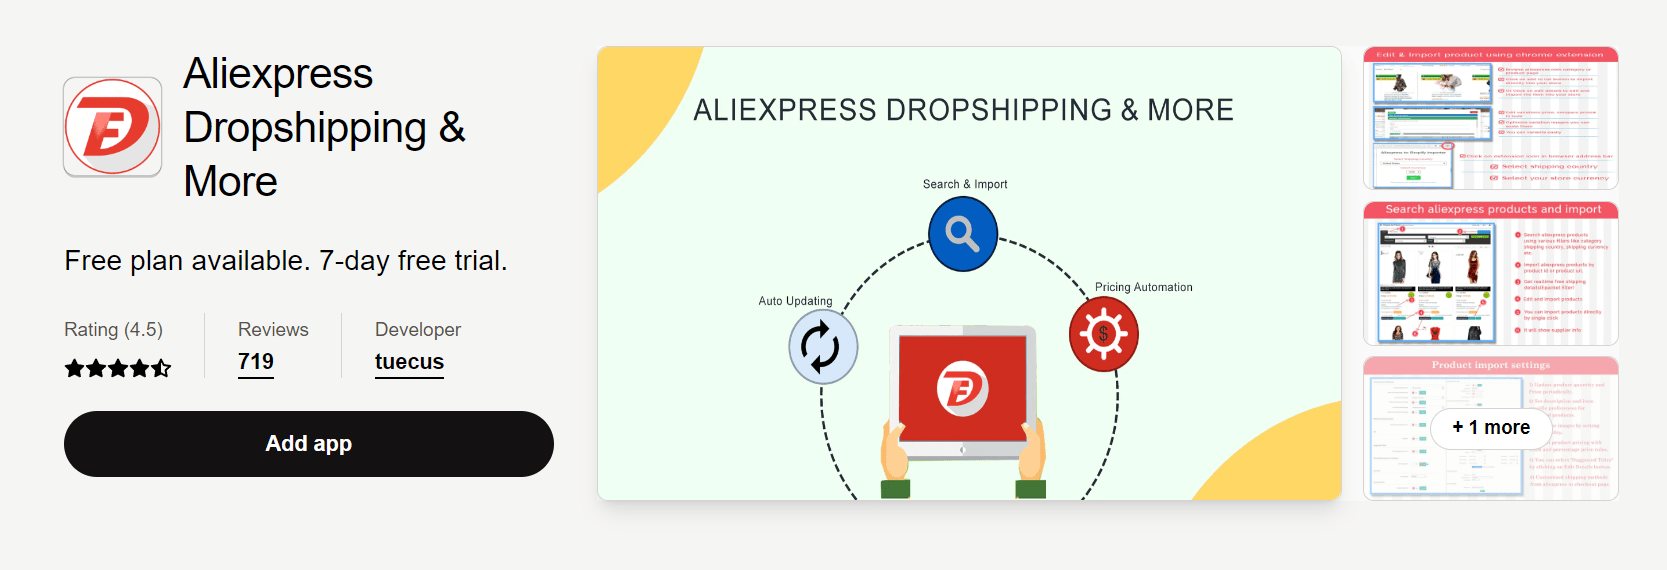 Aplicación de dropshipping de Aliexpress